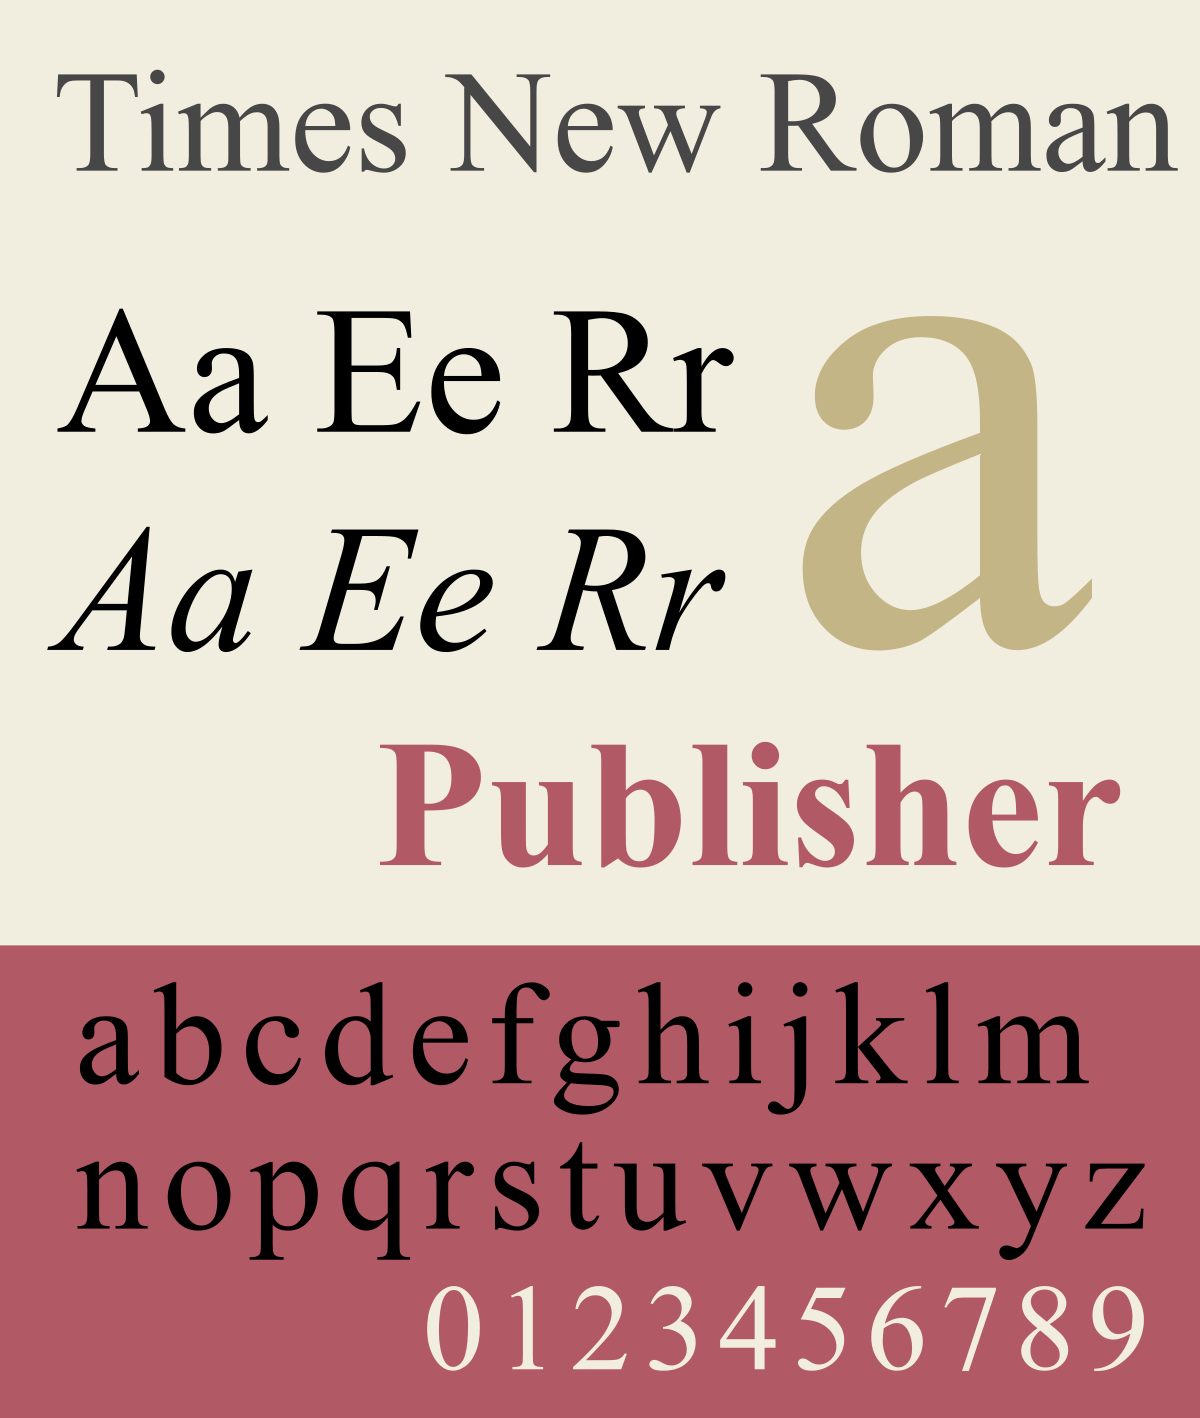 美国国务院淘汰 Times New Roman 字体